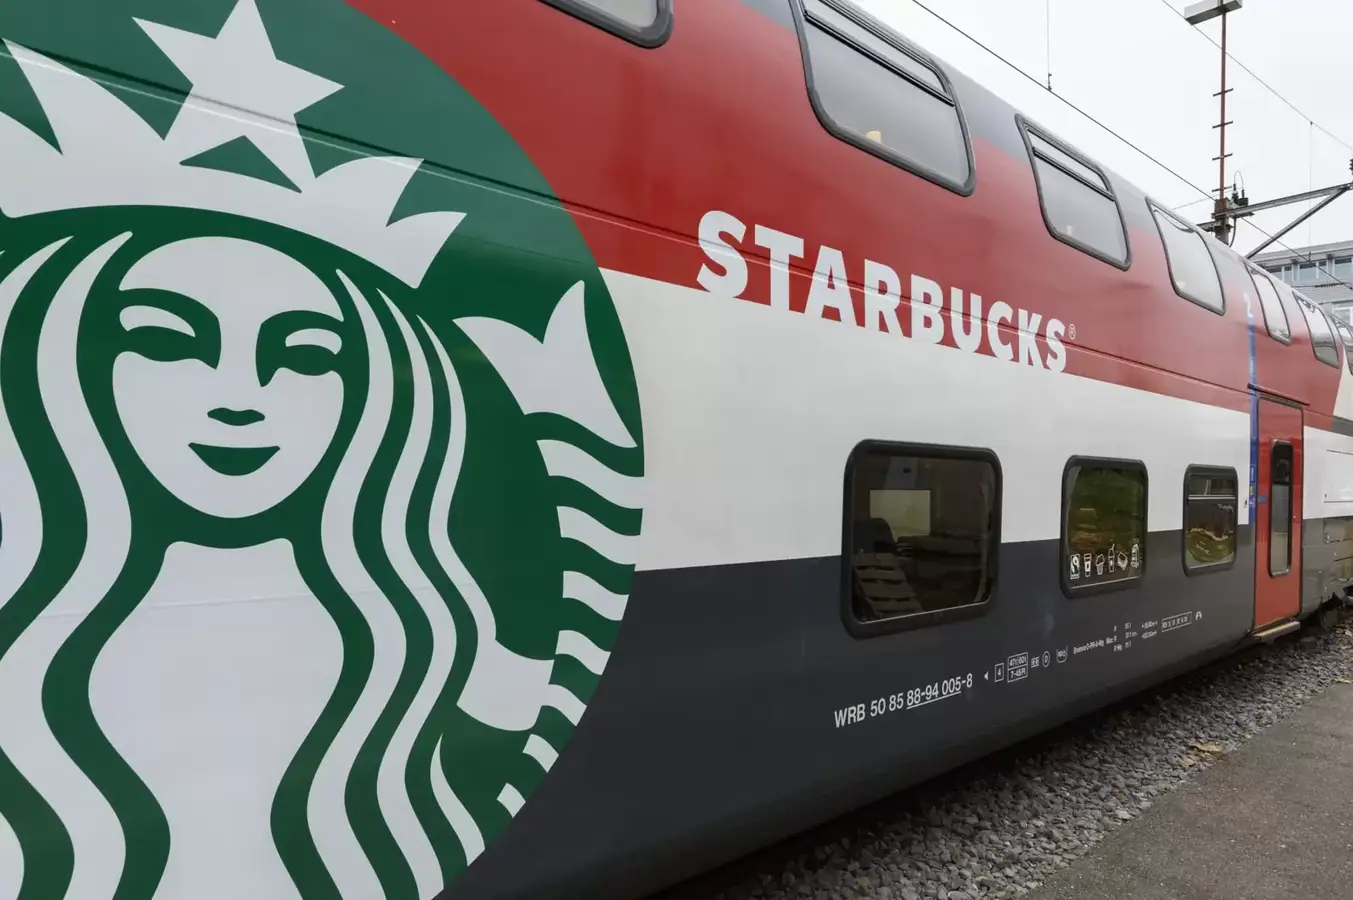 Weirdest Starbucks Stores In The World:On a train in Switzerland